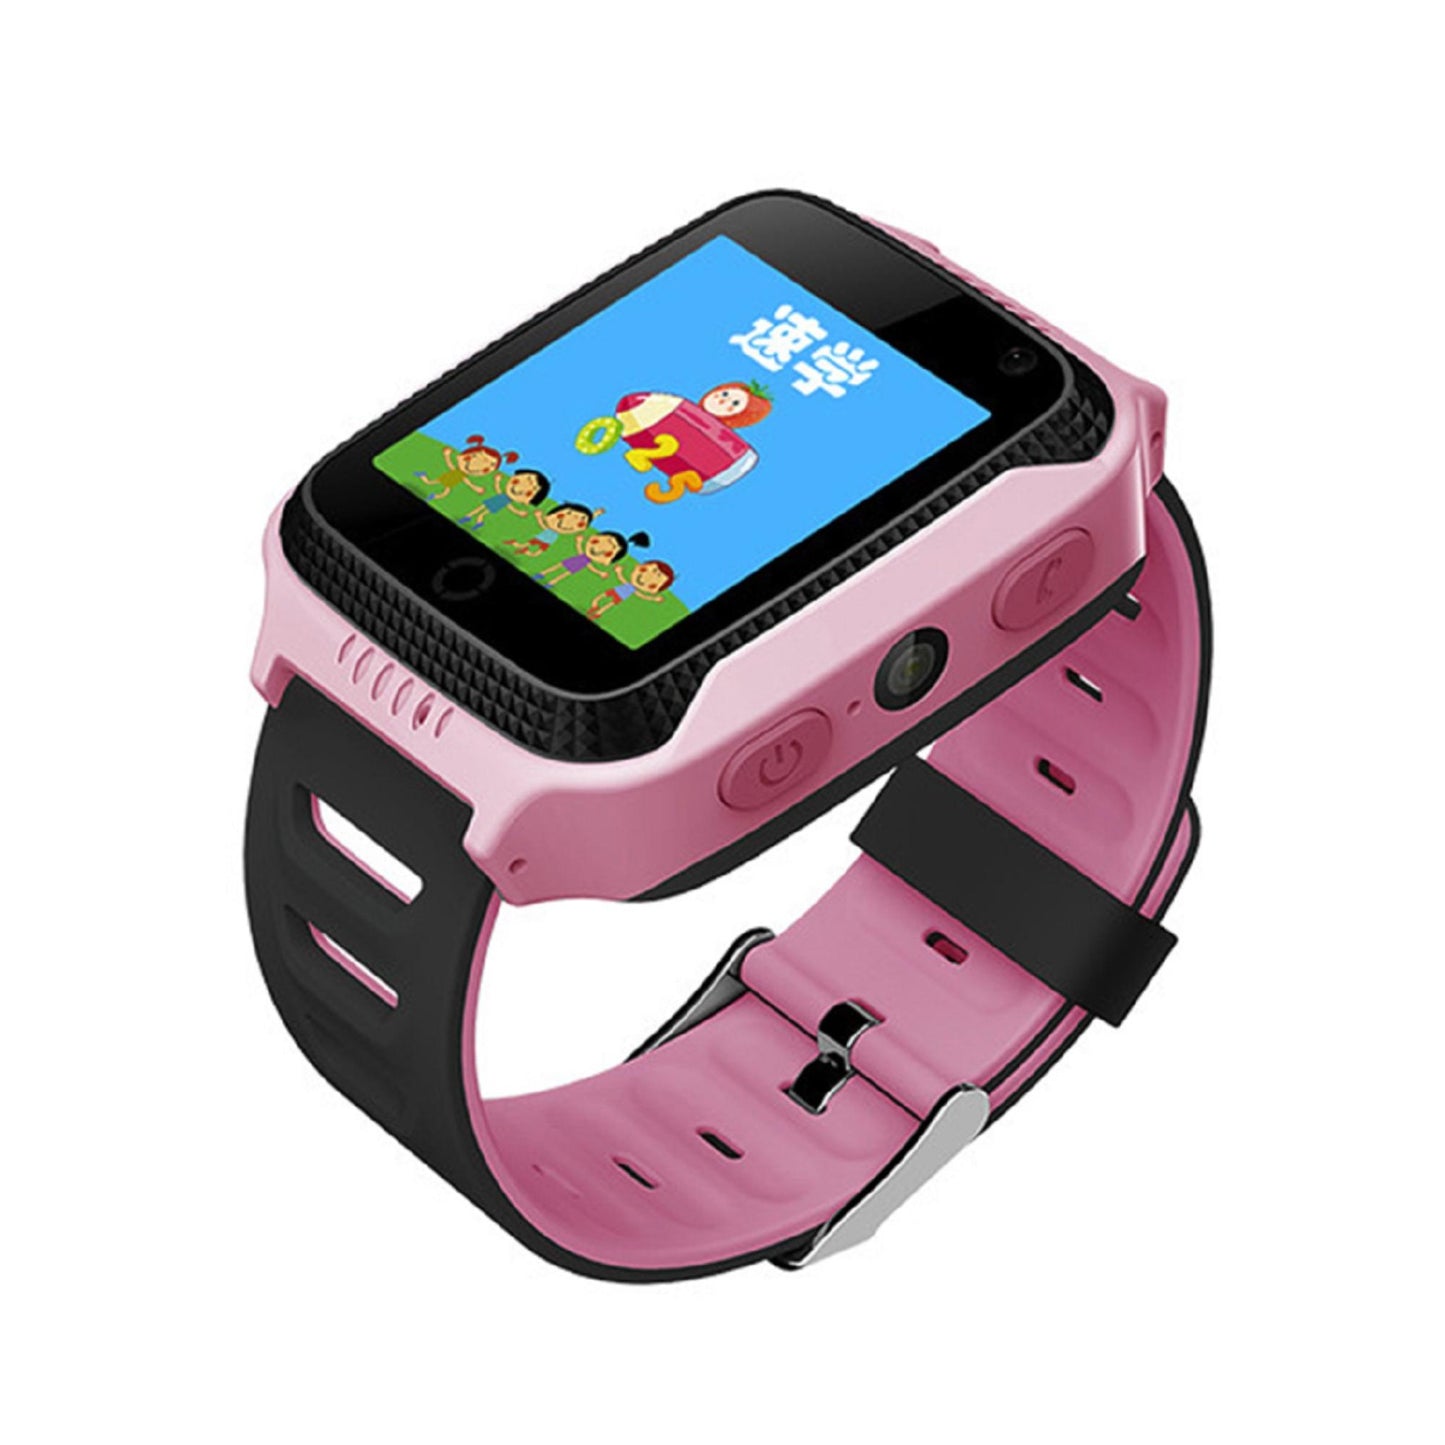 Karen M G900A Kinder-Smartwatch - 1,44-Zoll-TFT-Bildschirm, GPS, unterstützt 2G, 400mAh Batterie. | Blue Chilli Electronics.